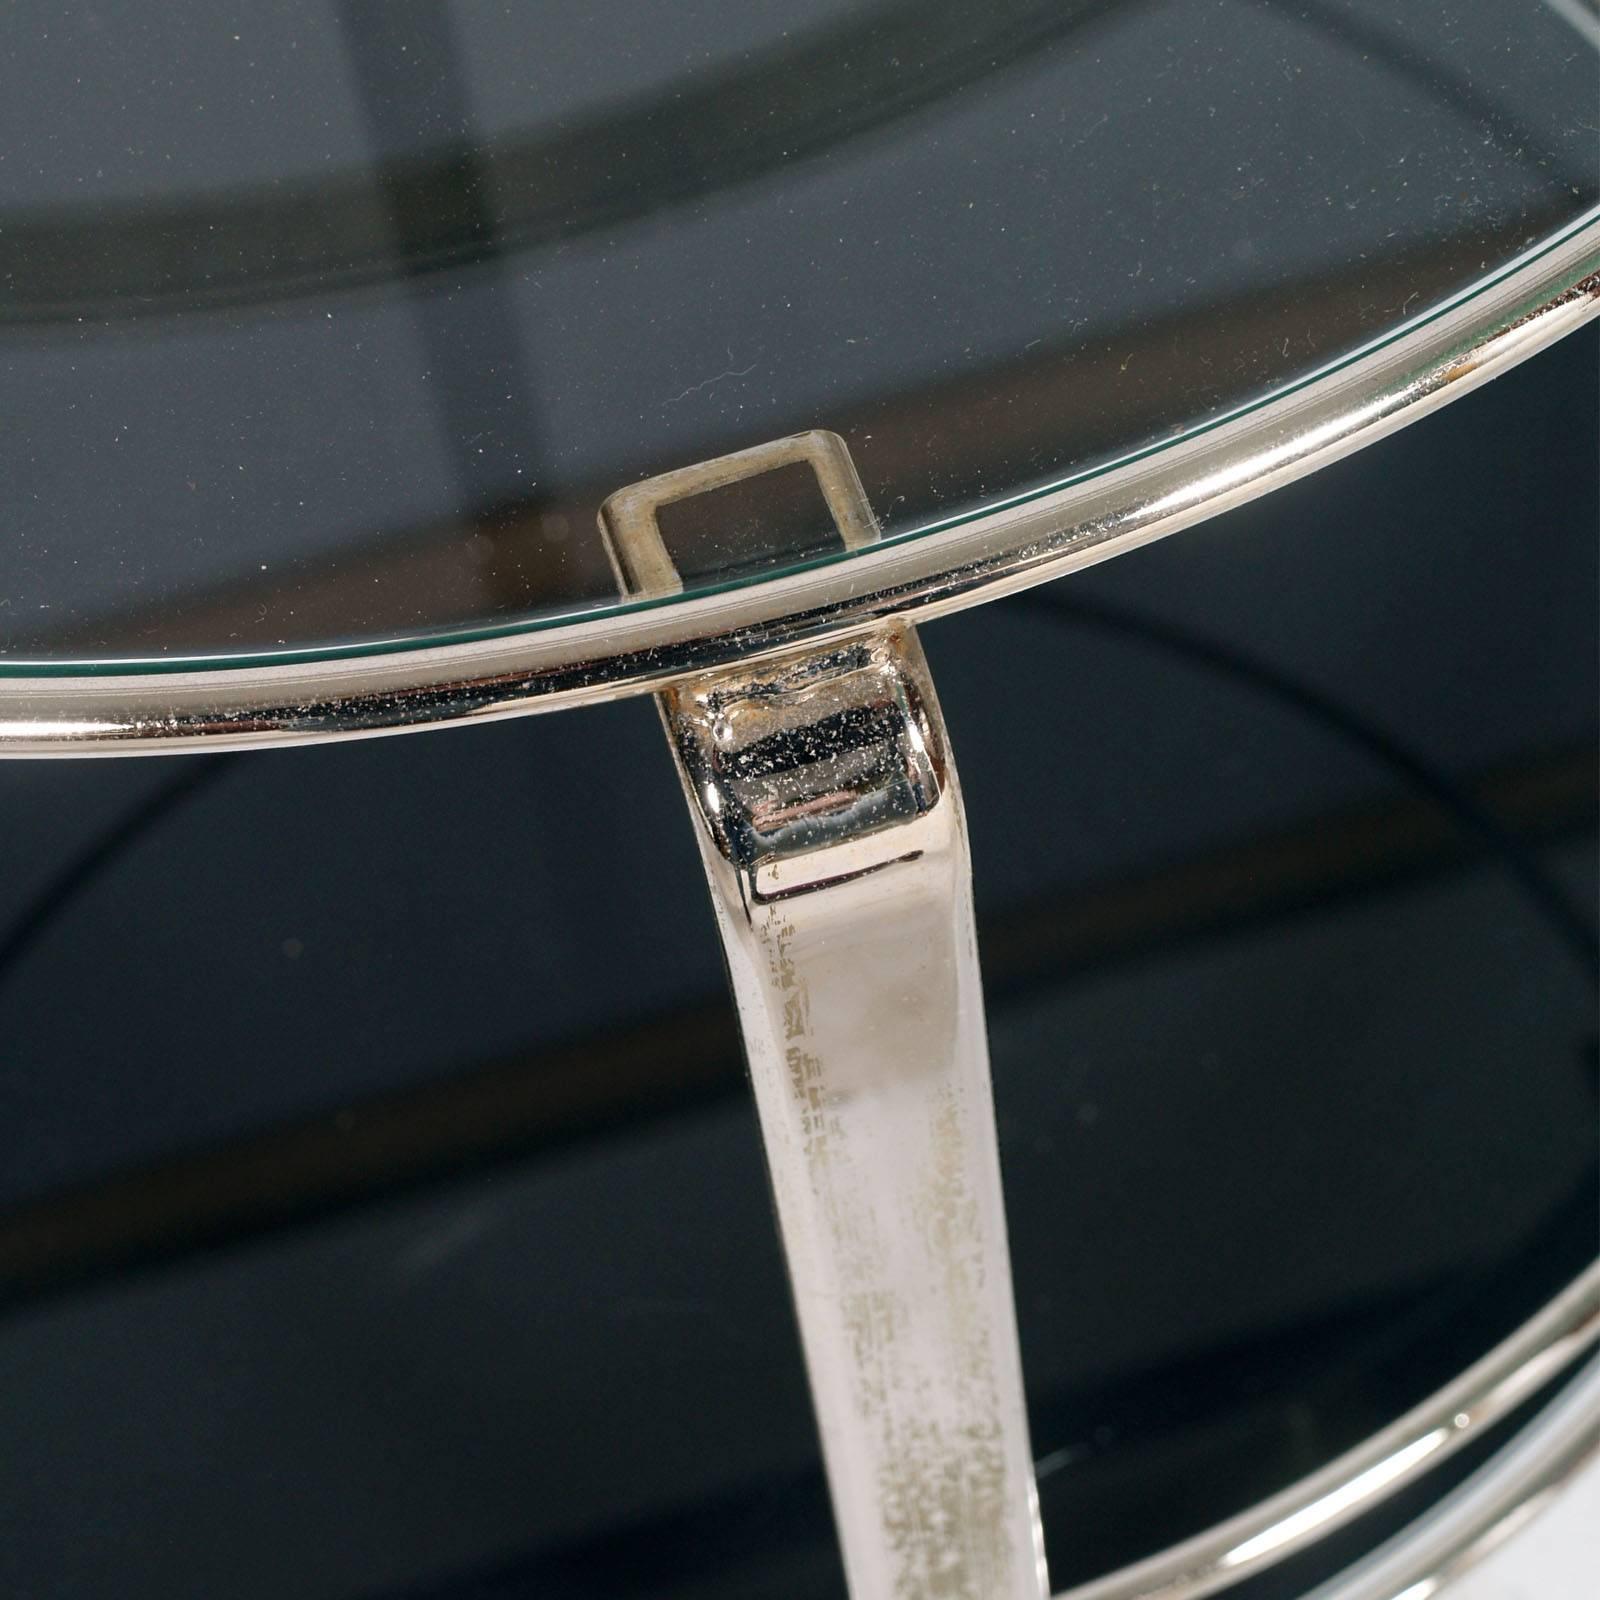 Französischer runder Cocktail-Barwagen aus verchromtem Metall der 1970er Jahre mit Rauchglas darunter und transparentem Kristall darüber.
Ausgezeichnete Bedingungen
Maße in cm: Höhe 80, Durchmesser 65.